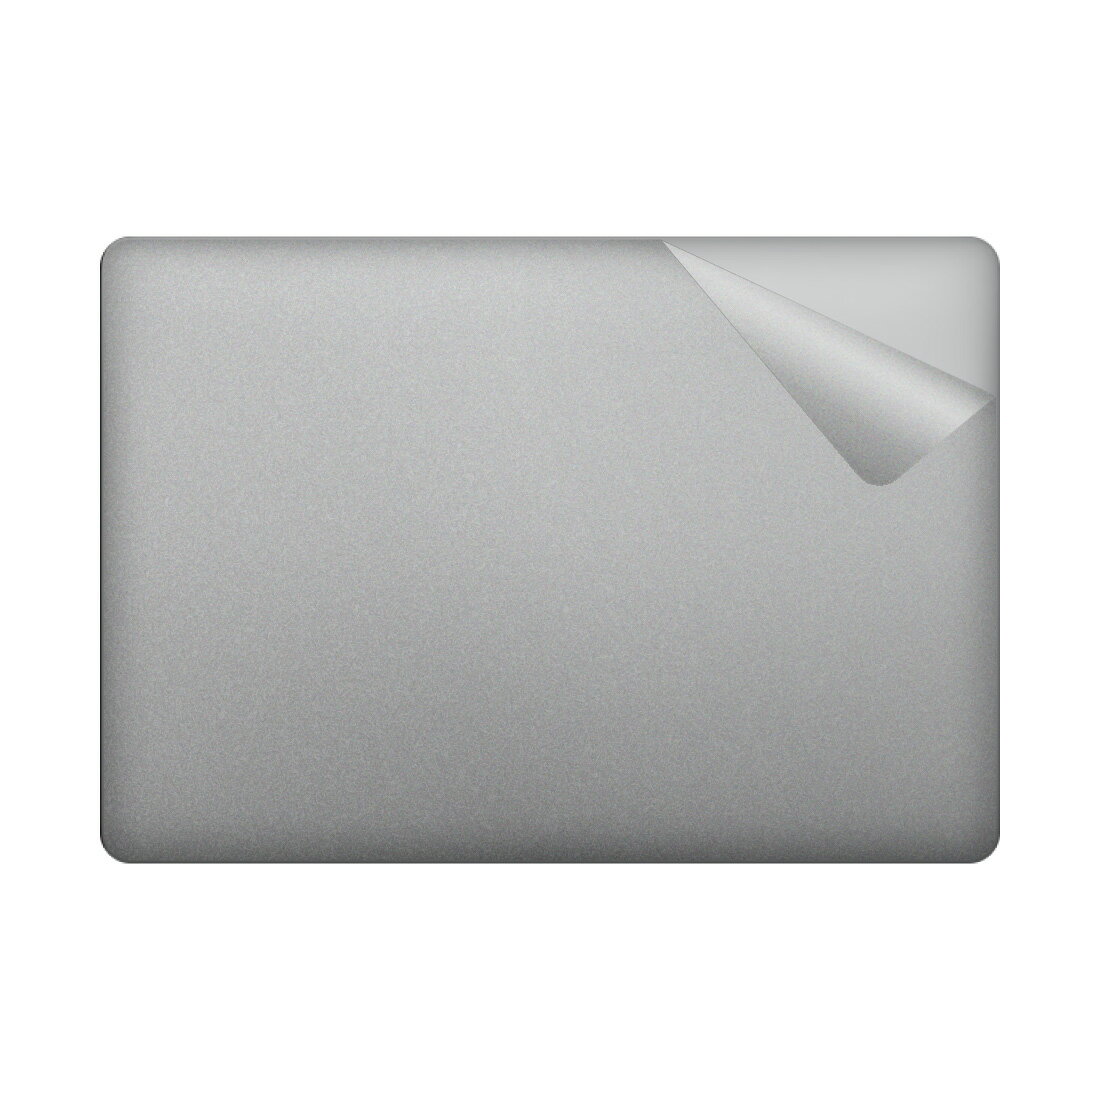 スキンシール MacBook Pro 13インチ(2022年/2020年モデル) 【透明 すりガラス調】 日本製 自社製造直販